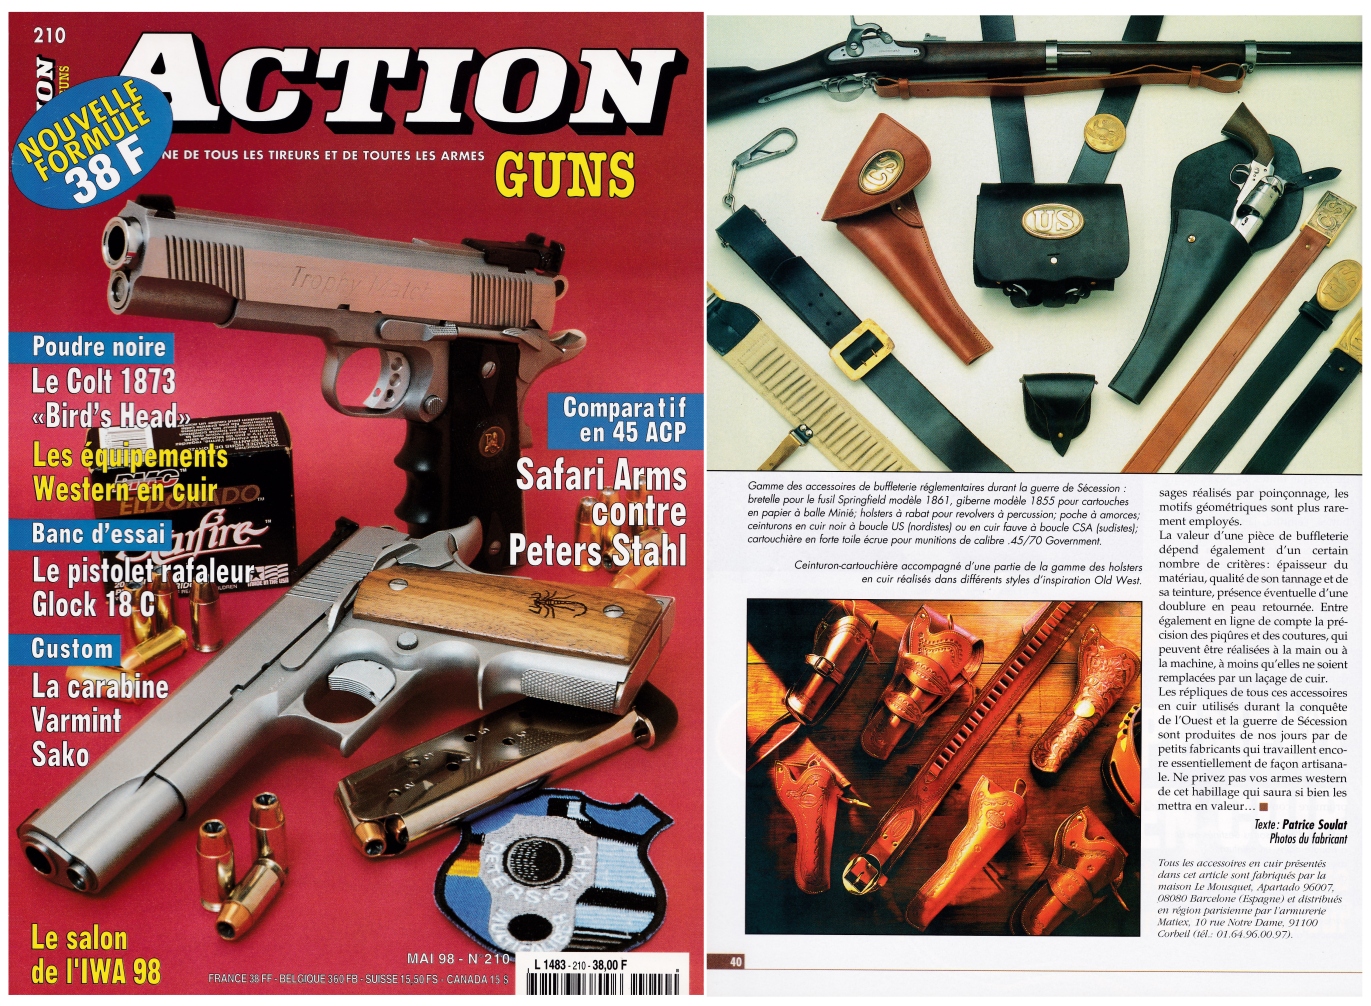 L'article consacré aux équipements Western en cuir a été publié sur 3 pages dans le magazine Action Guns n°210 (mai 1998).